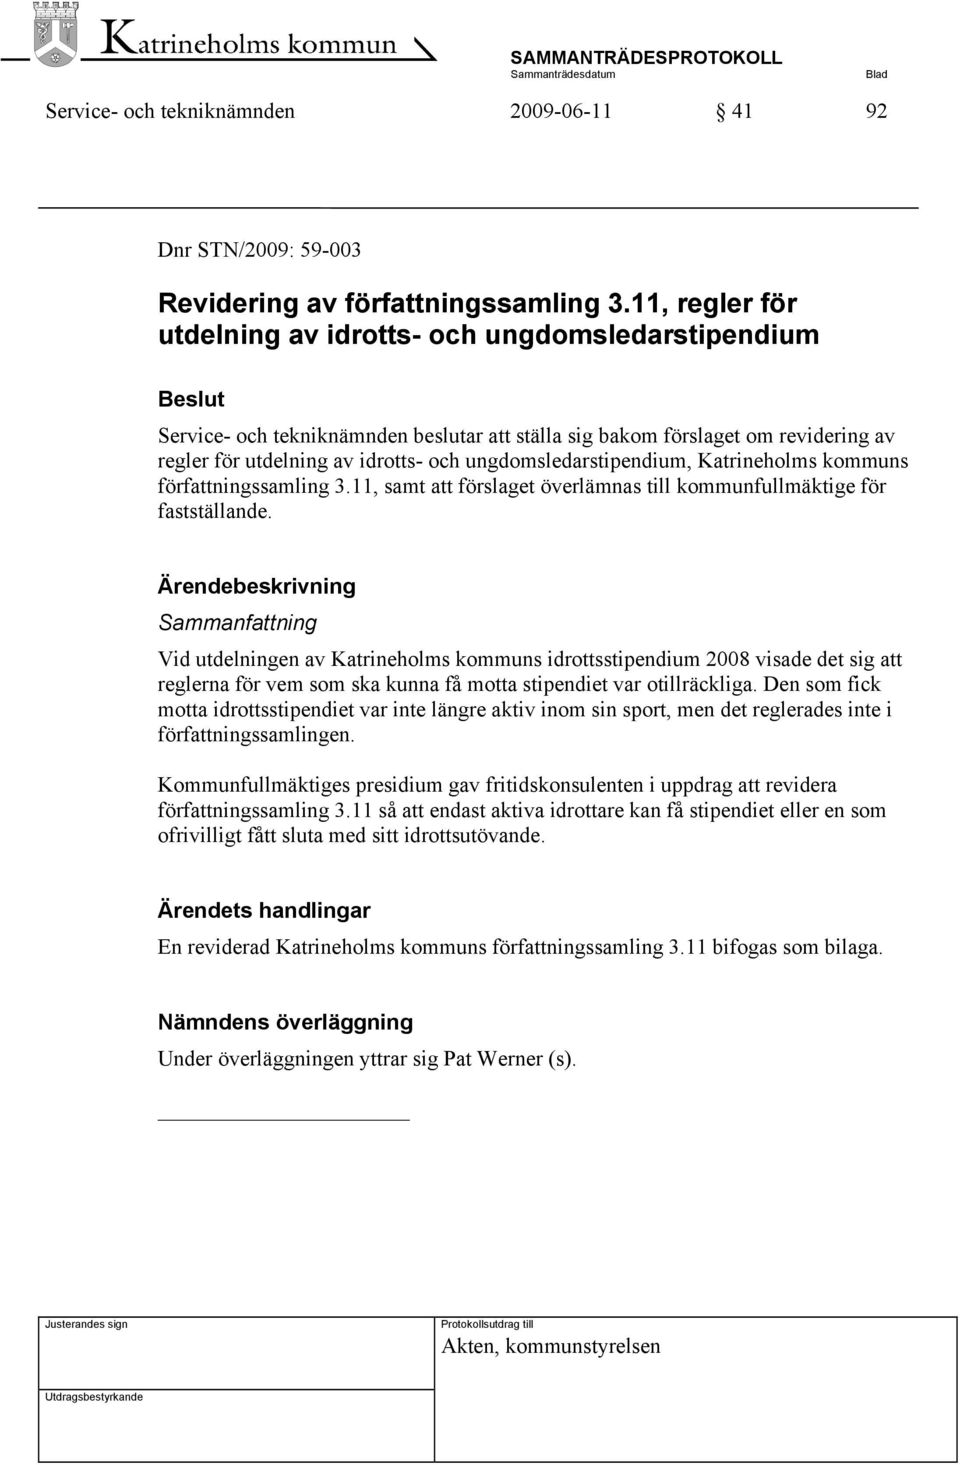 ungdomsledarstipendium, Katrineholms kommuns författningssamling 3.11, samt att förslaget överlämnas till kommunfullmäktige för fastställande.